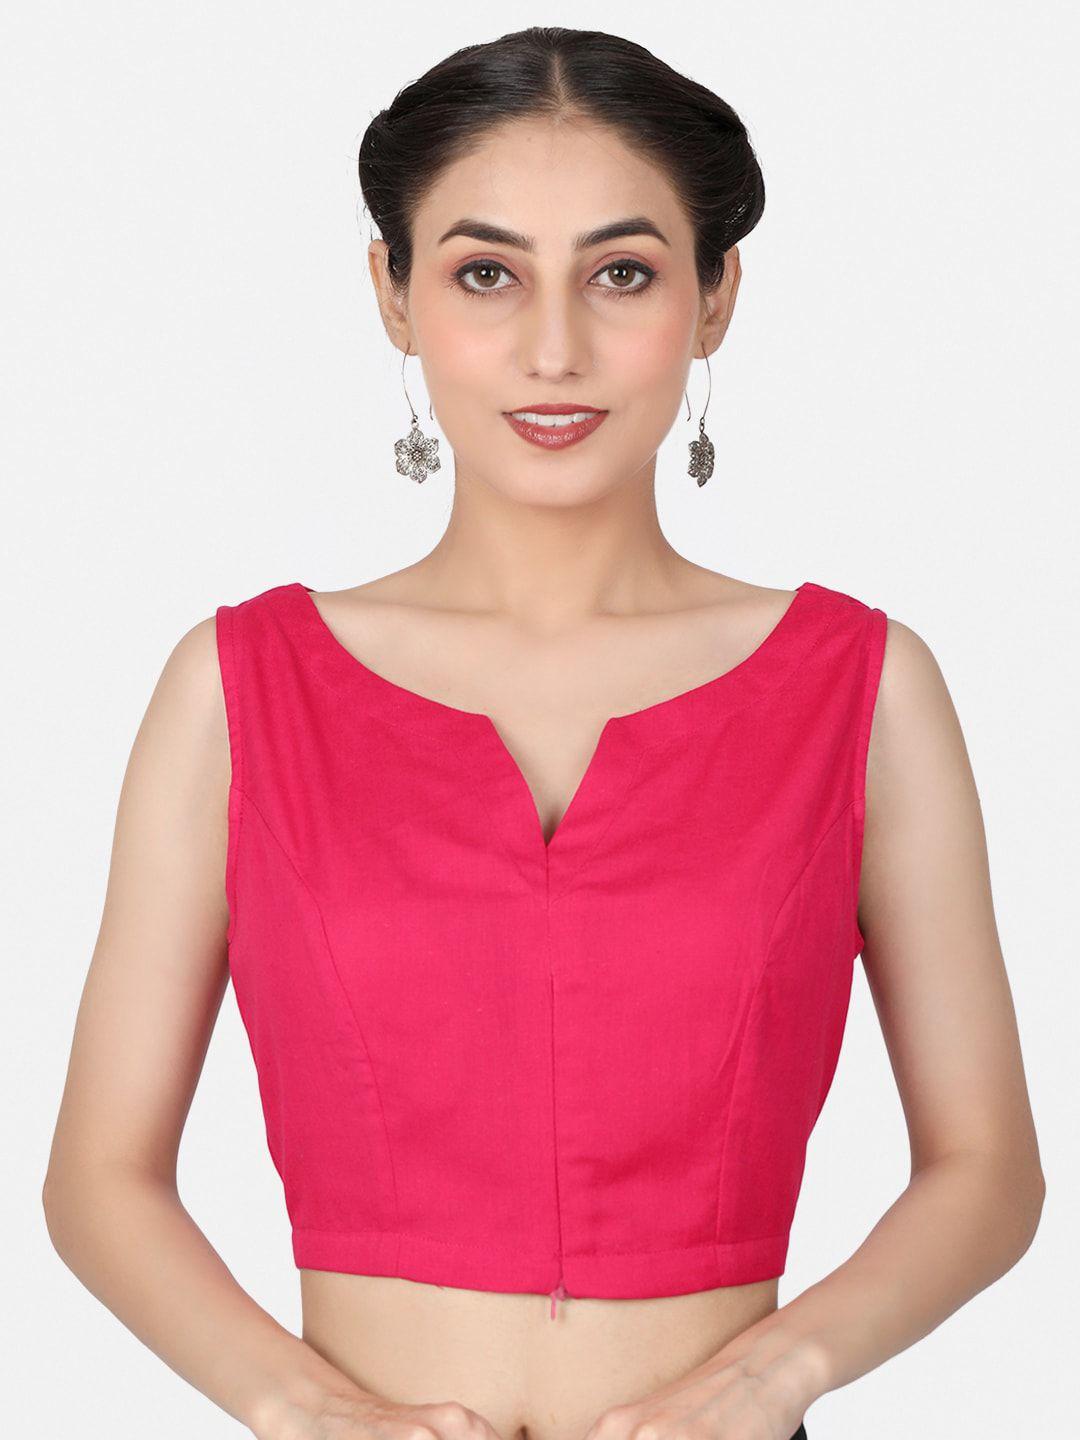 llajja pure cotton v-neck non padded saree blouse